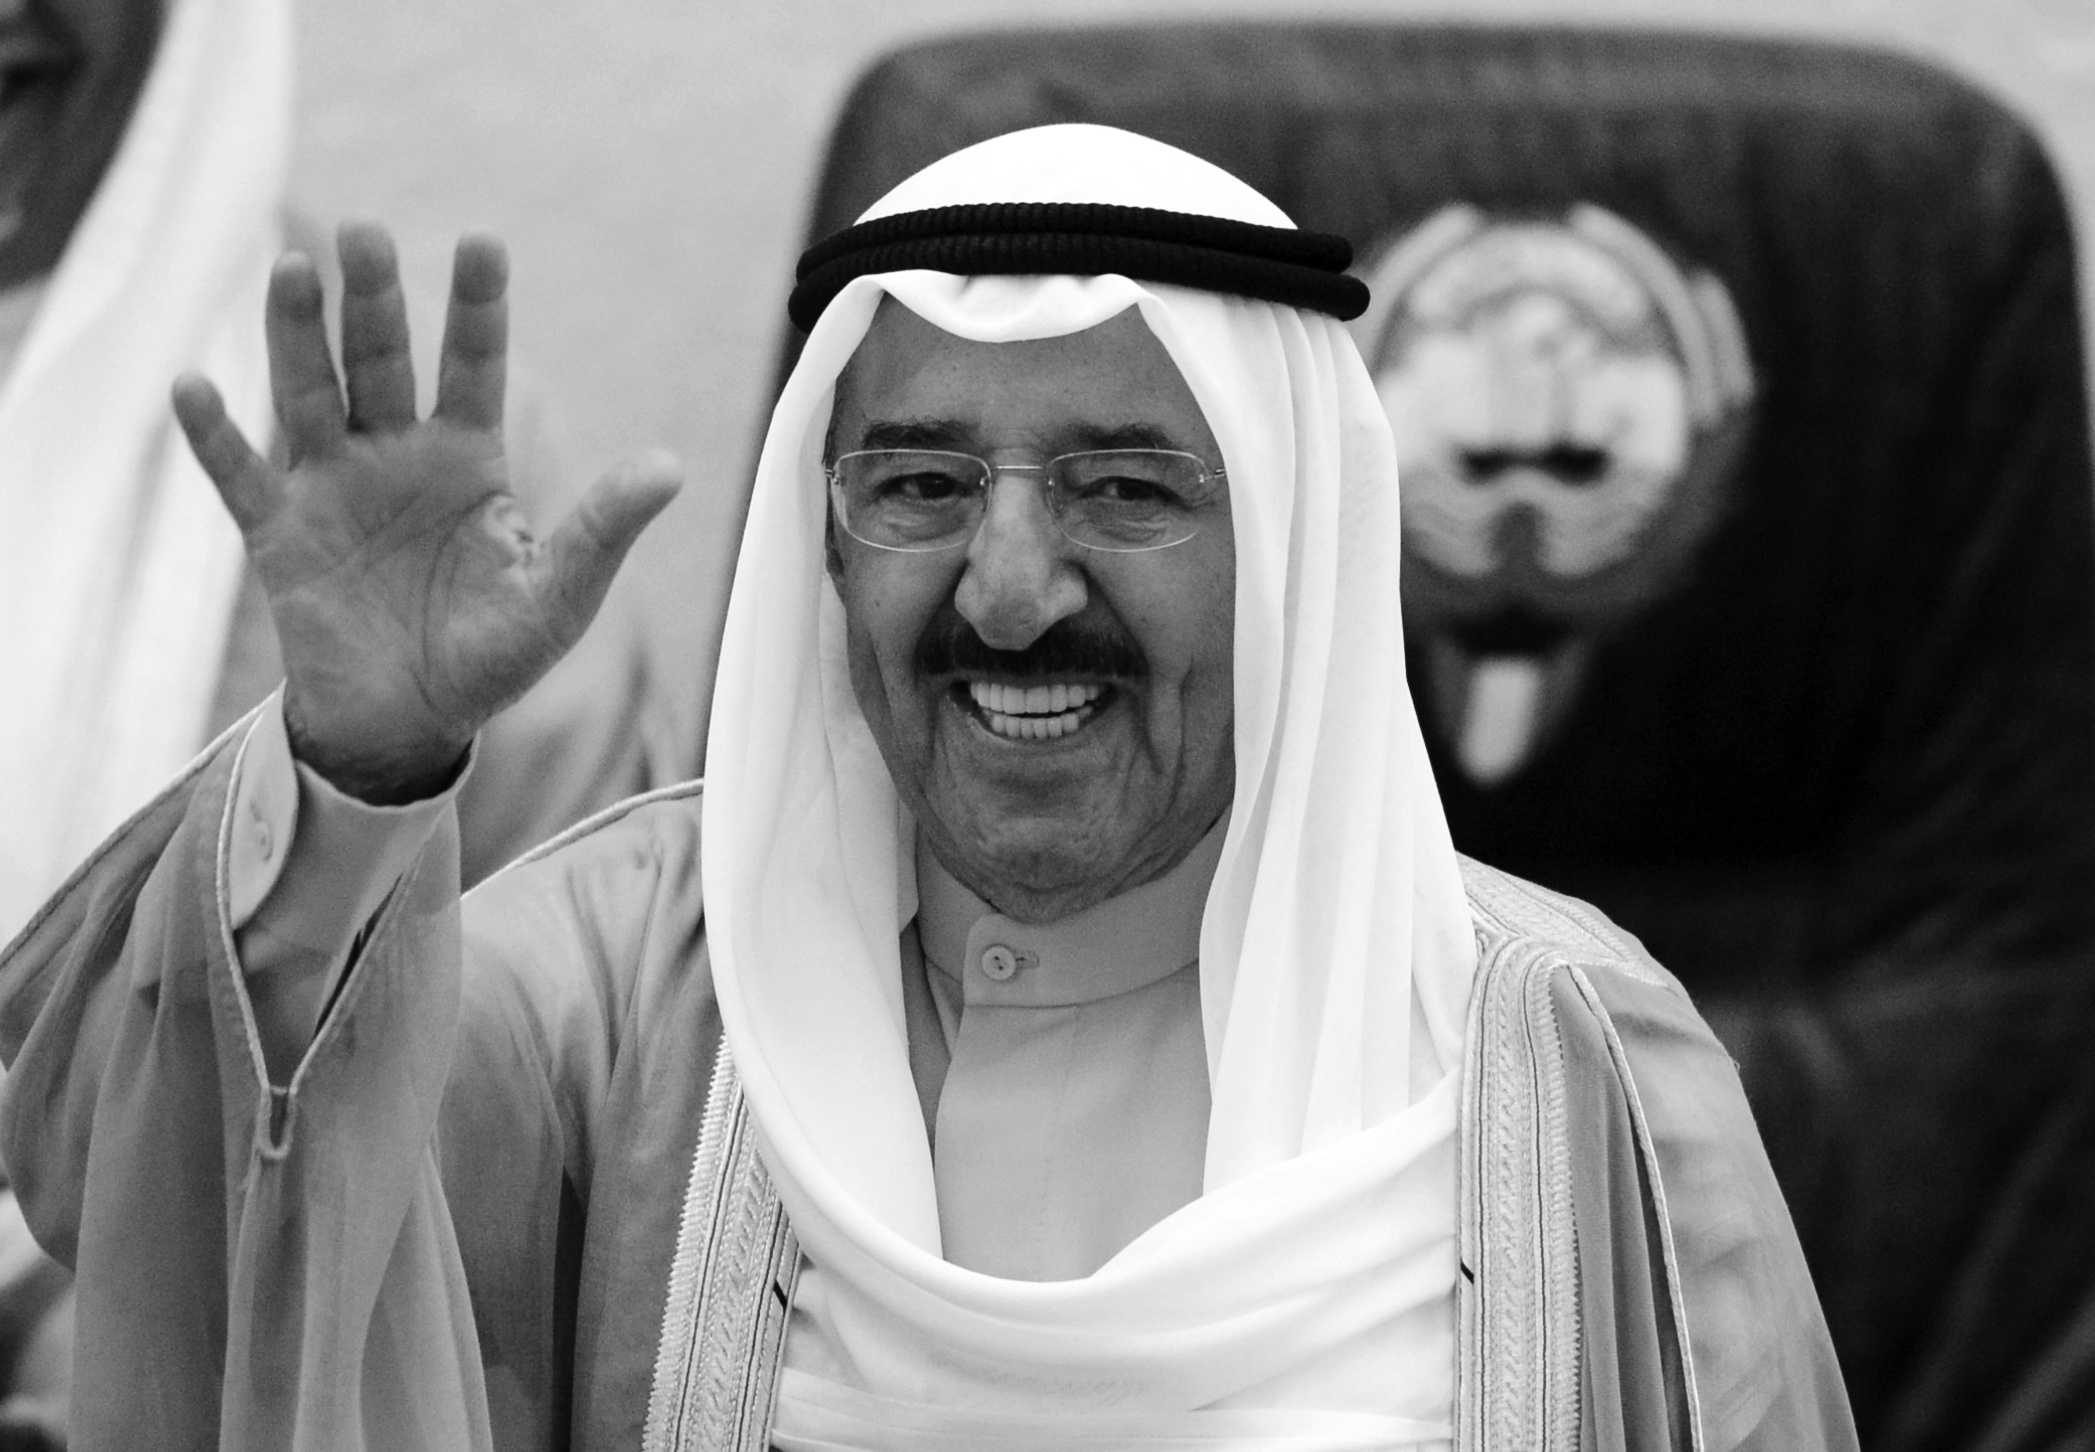 دولة الكويت تعلن الحداد الرسمي 40 يوما وتعطل الدوائر الرسمية ثلاثة أيام اعتبارا من اليوم                                                                                                                                                                  